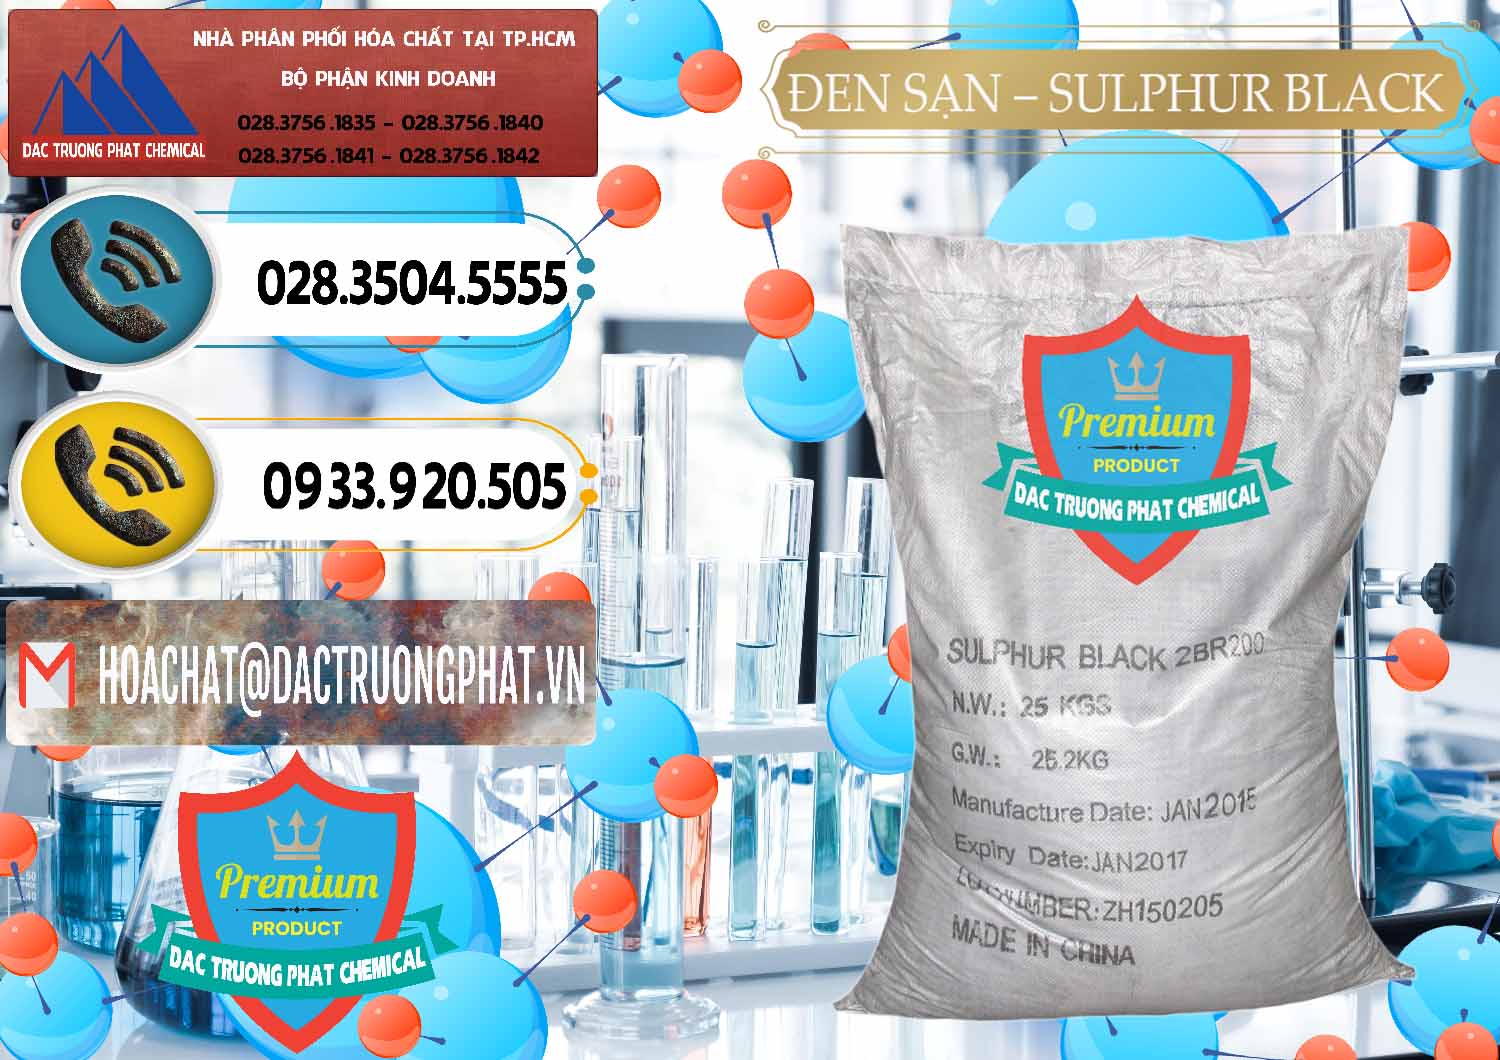 Nơi chuyên bán _ cung cấp Đen Sạn – Sulphur Black Trung Quốc China - 0062 - Nơi nhập khẩu và phân phối hóa chất tại TP.HCM - hoachatdetnhuom.vn